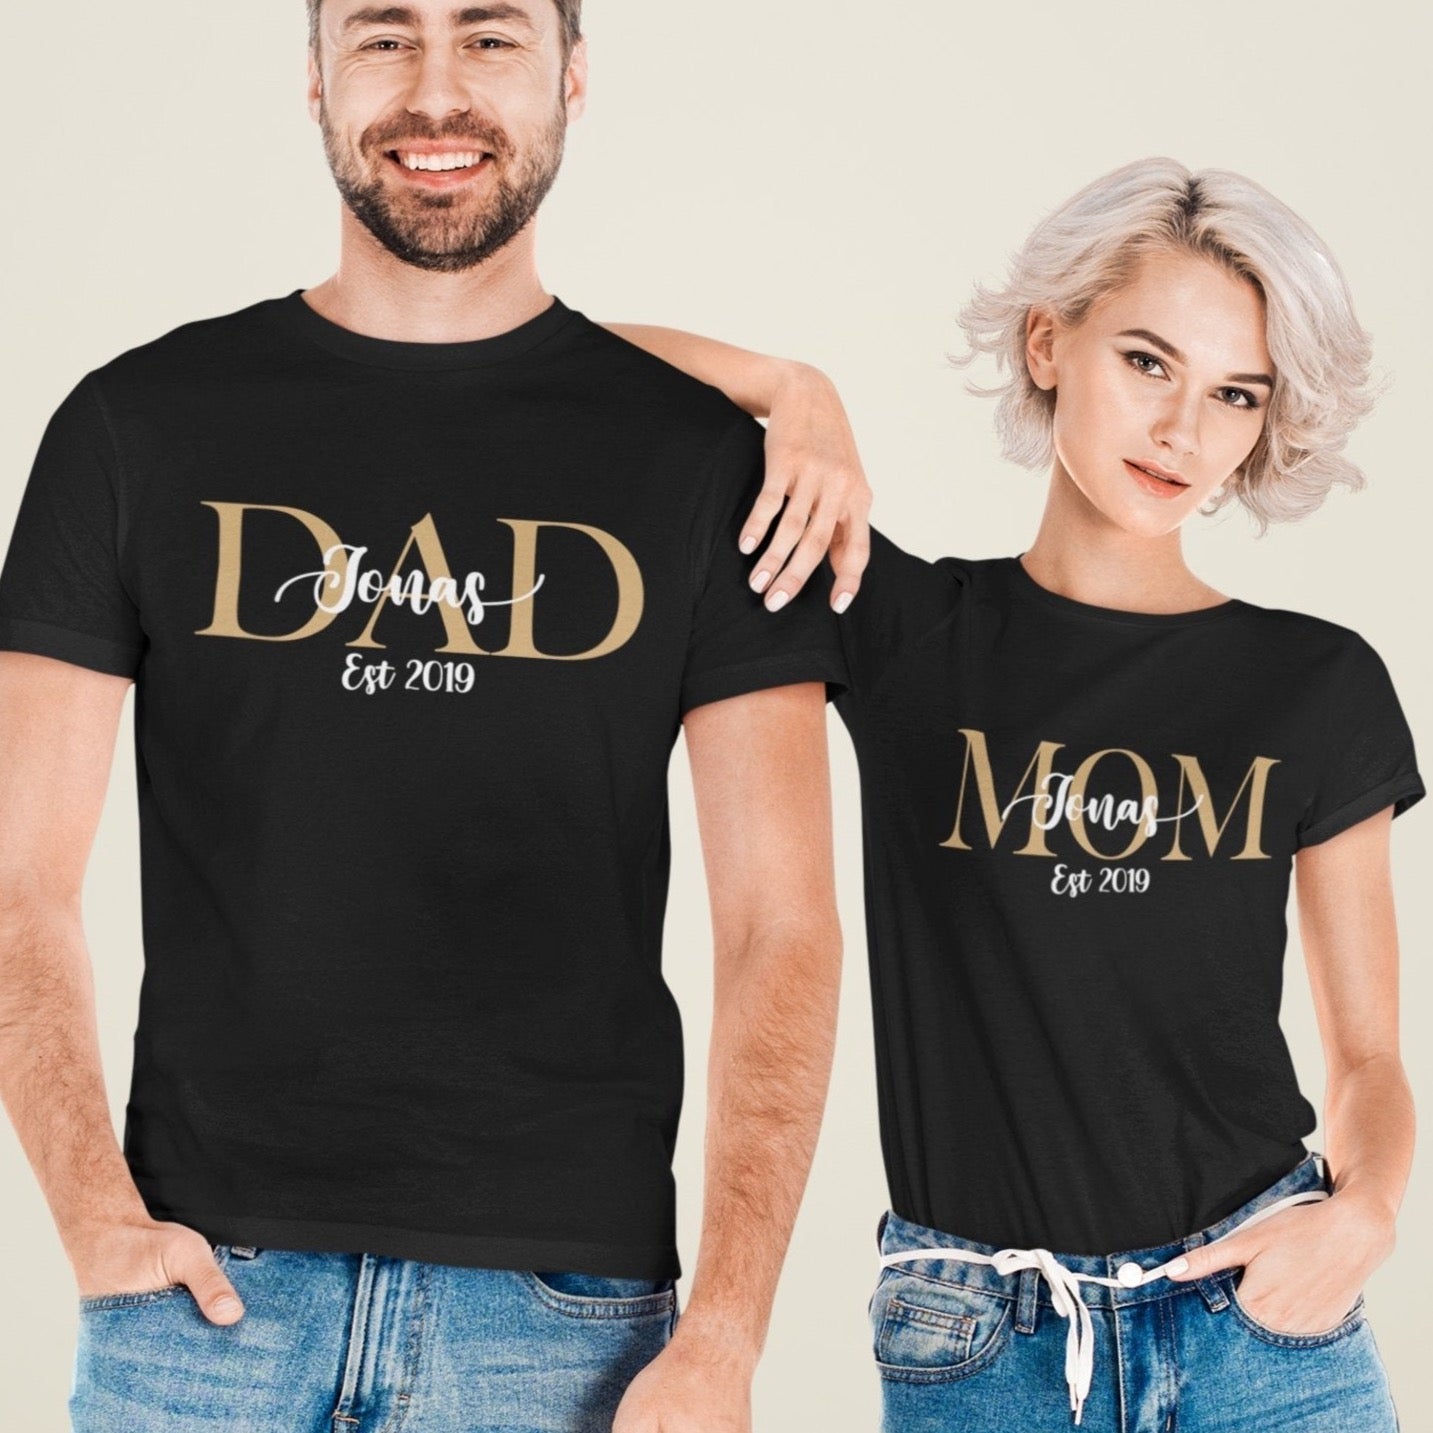 Familien T-Shirts mit Namen Familien Partnerlook Mom Shirt, Dad Shirt und Kinder Shirt mit Namen personalisiert